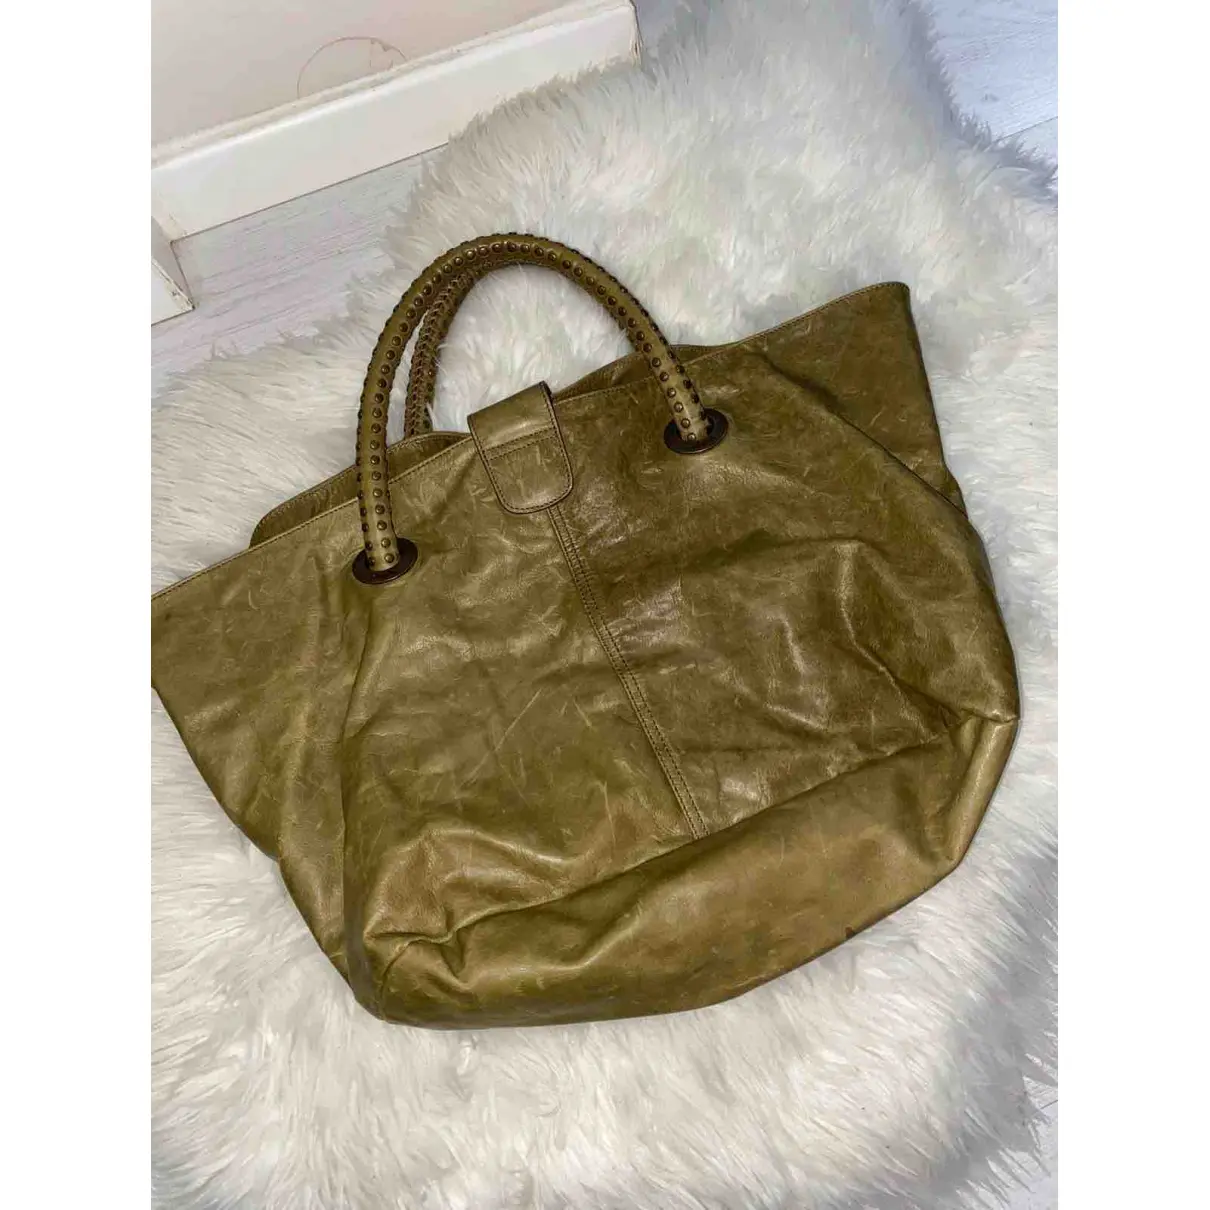 Buy Kenzo Leather bag online